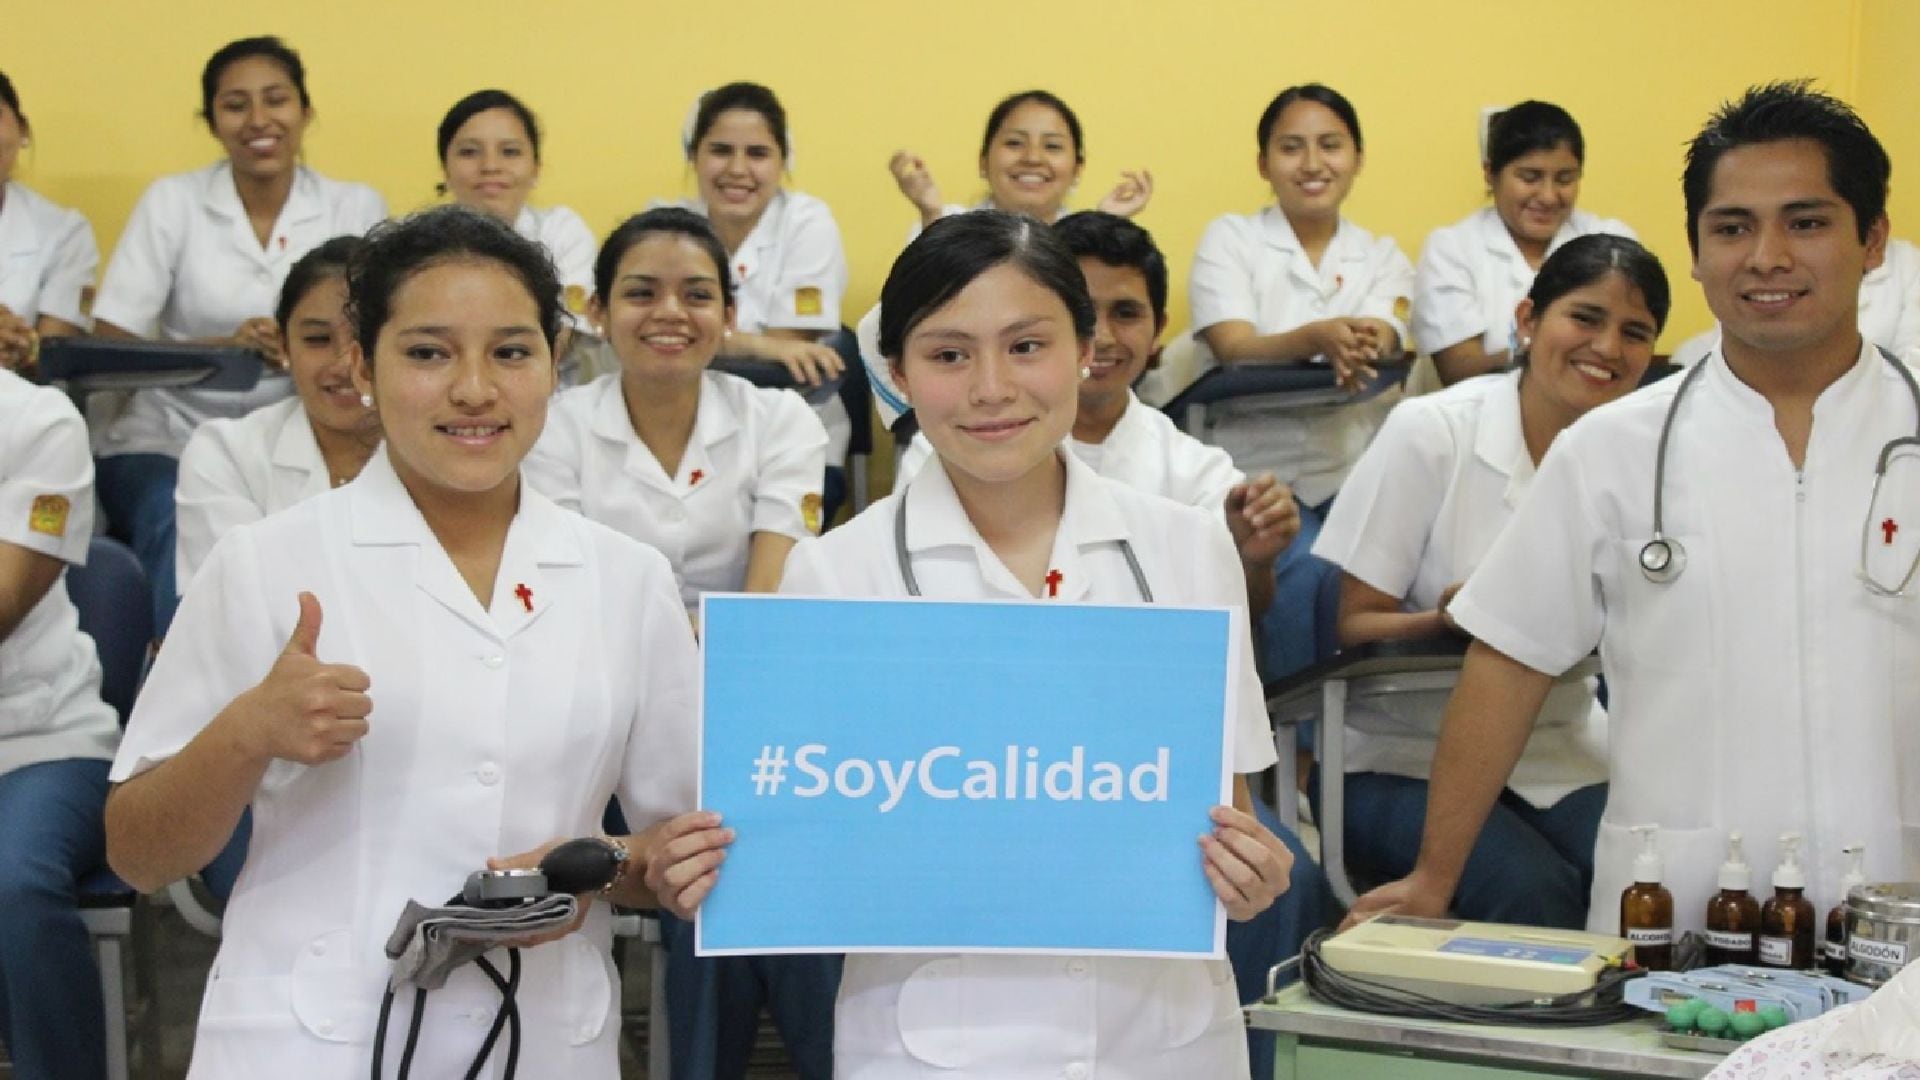 Enfermeras en el Perú: estos es lo que pueden llegar a ganar y las oportunidades laborales que tienen